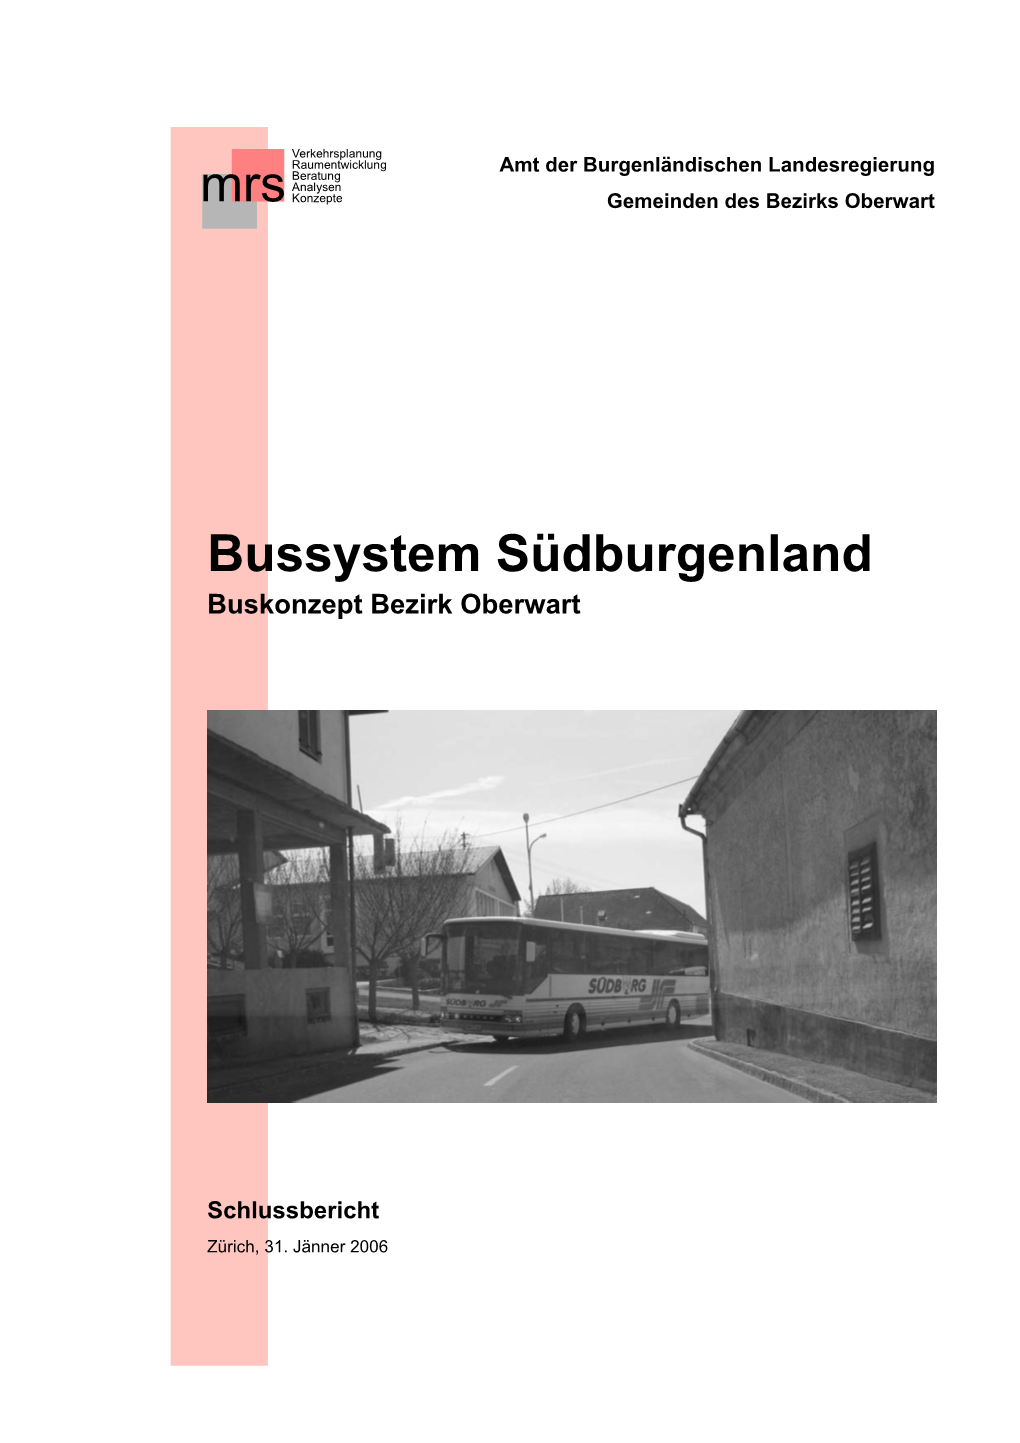 Bussystem Südburgenland Buskonzept Bezirk Oberwart